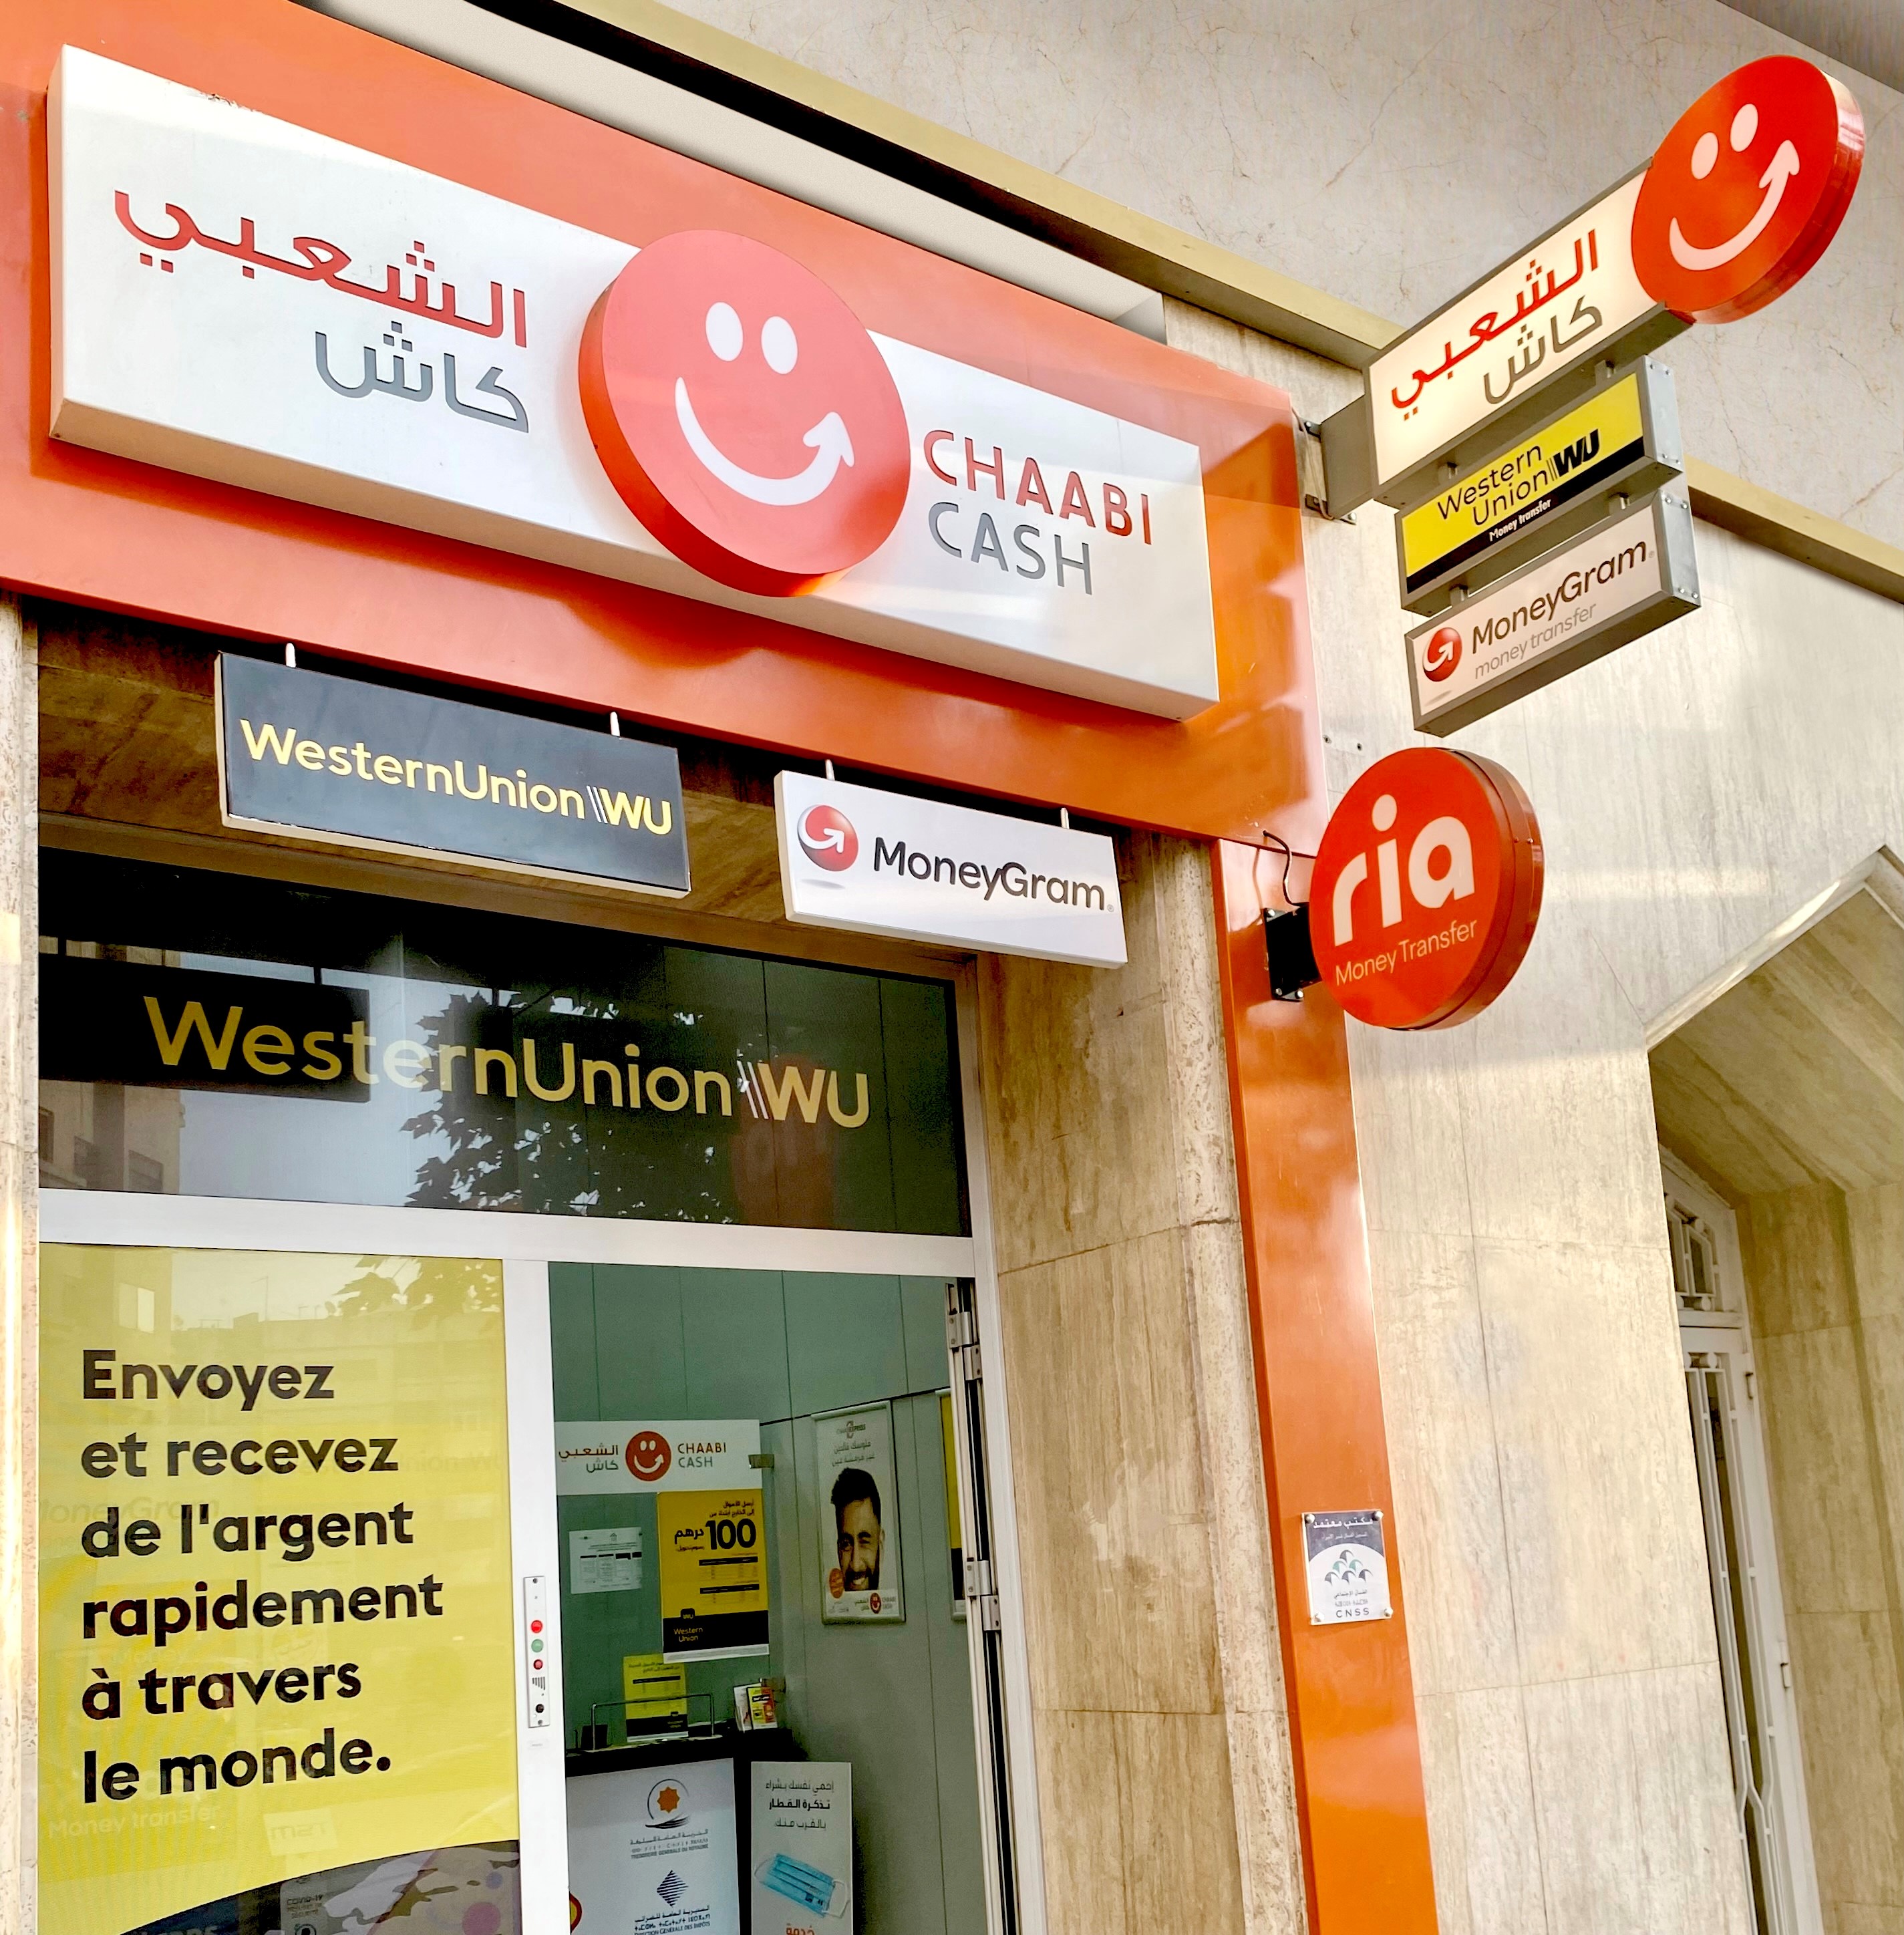 Transfert d’argent : Chaabi Cash s’allie à l’opérateur américain Sendwave, une première au Maroc